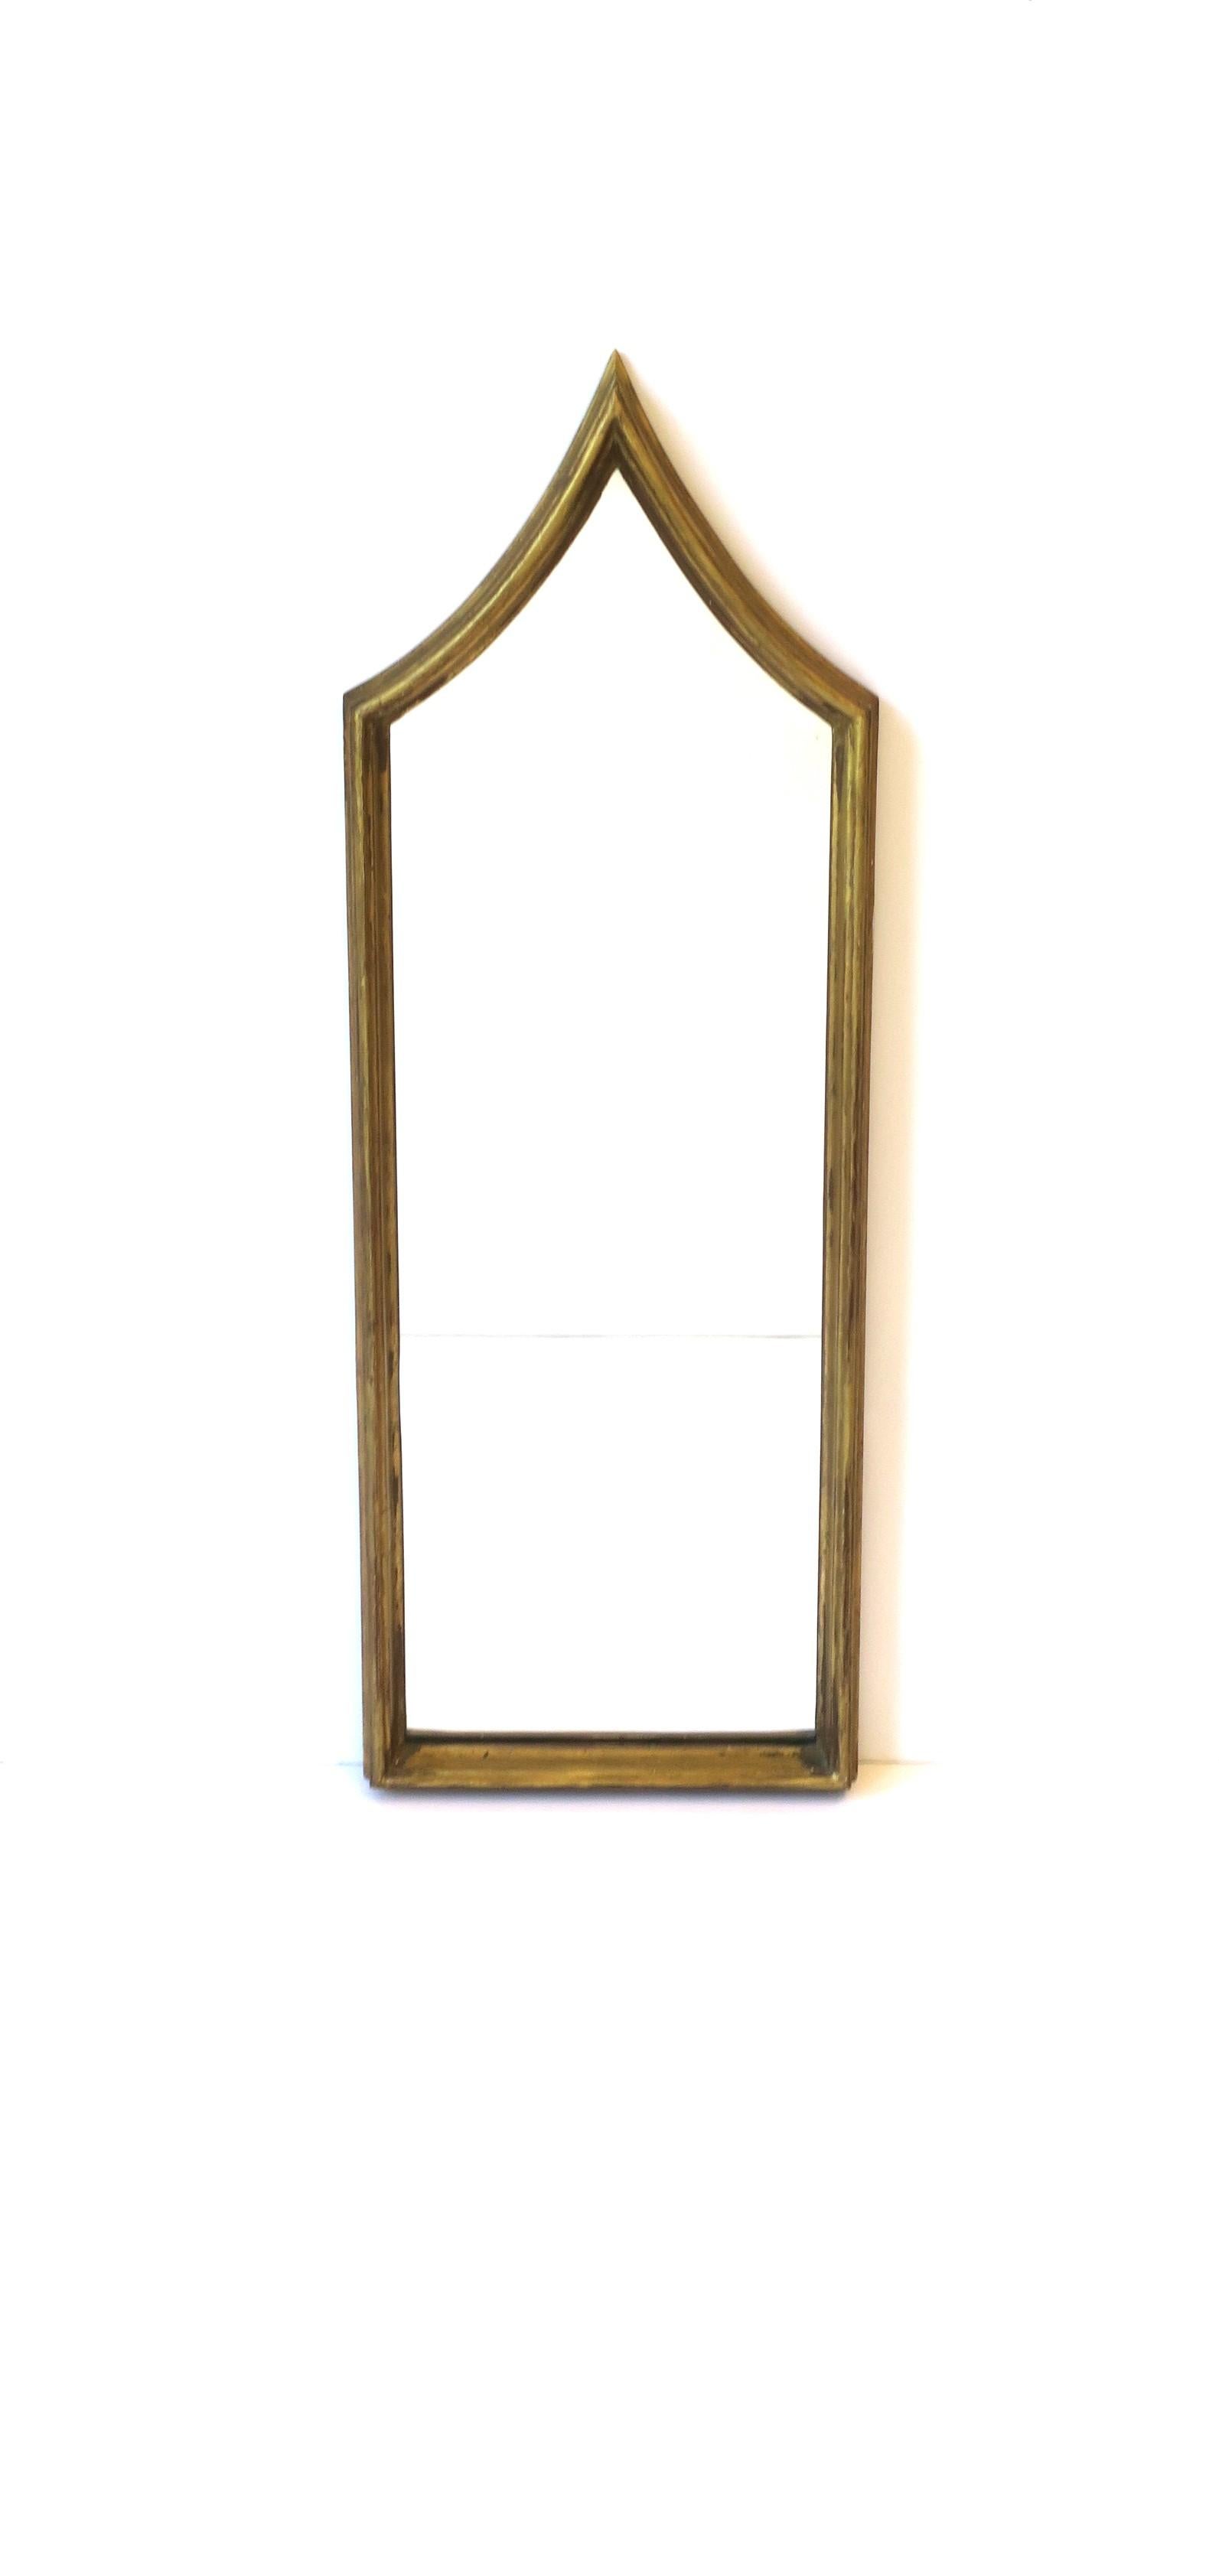 Un grand miroir italien élancé avec un cadre en bois doré dans le style gothique, vers le début ou le milieu du 20e siècle, Italie. Un grand miroir pour une vanité, un hall, un foyer, etc., où un miroir grand et mince est nécessaire. Le miroir est